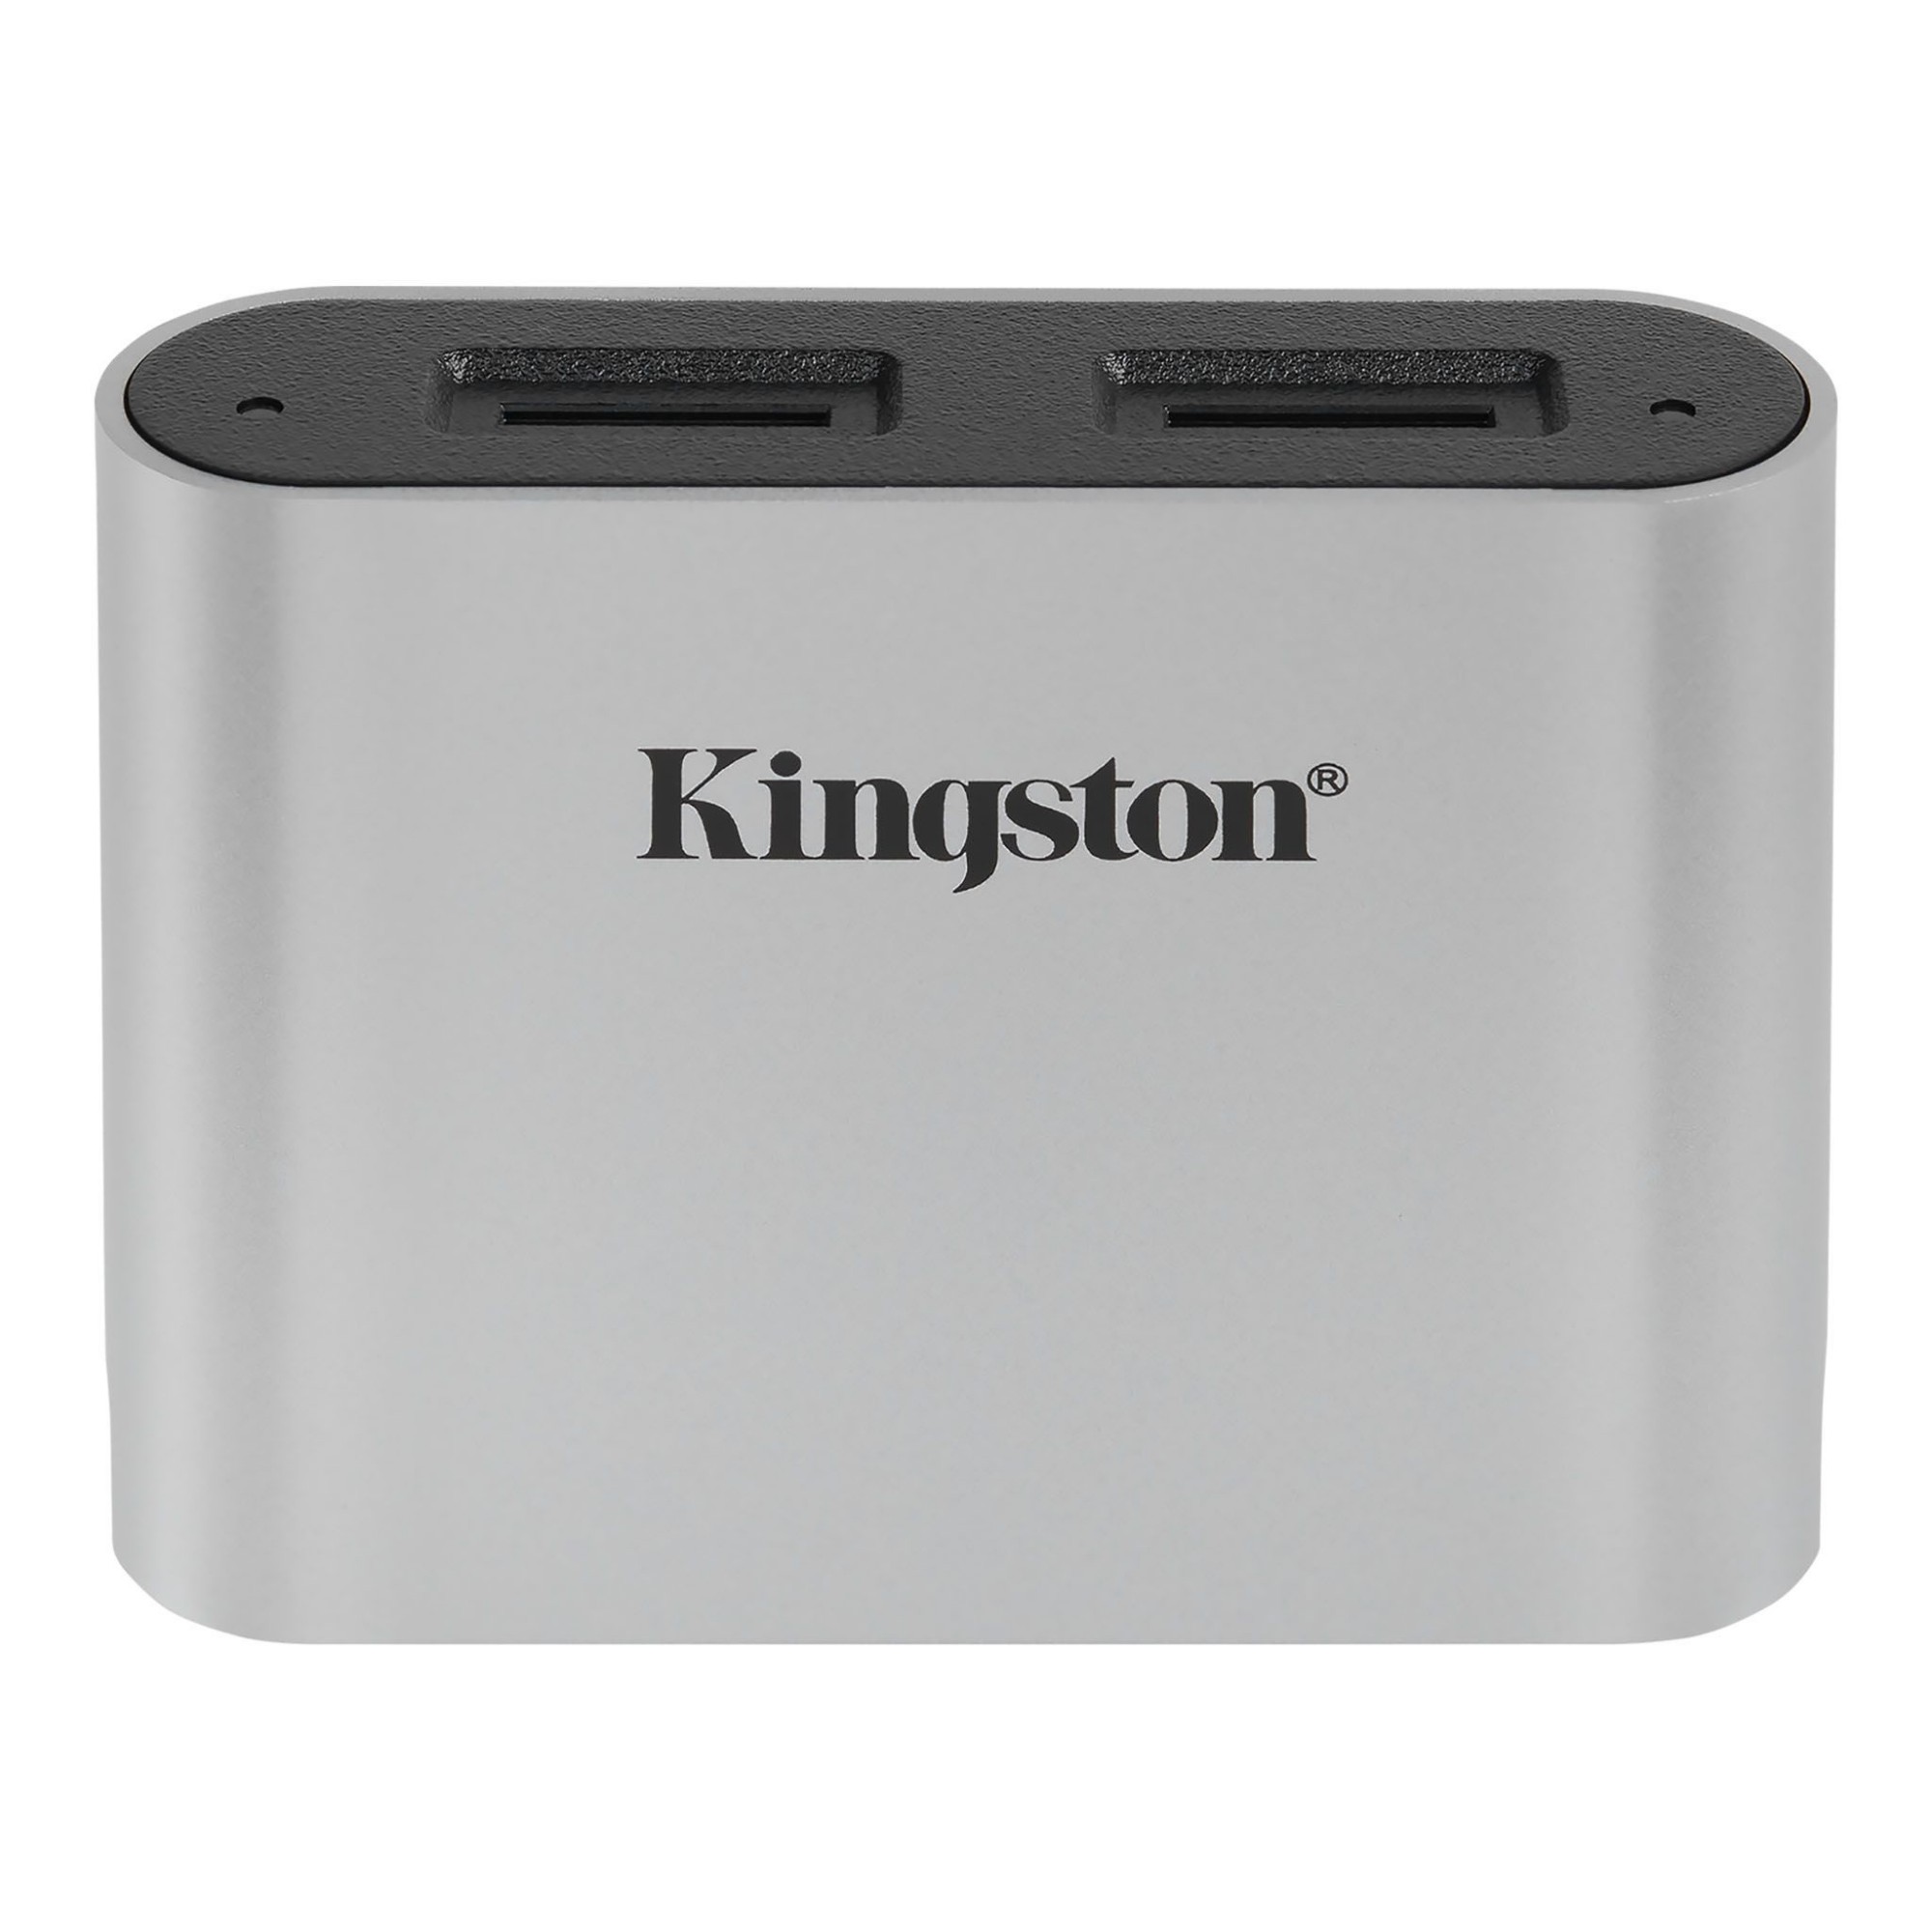 Kingston Technology Workflow microSD Reader card reader USB 3.2 Gen 1 (3.1 Gen 1) Type-C Black, Silver